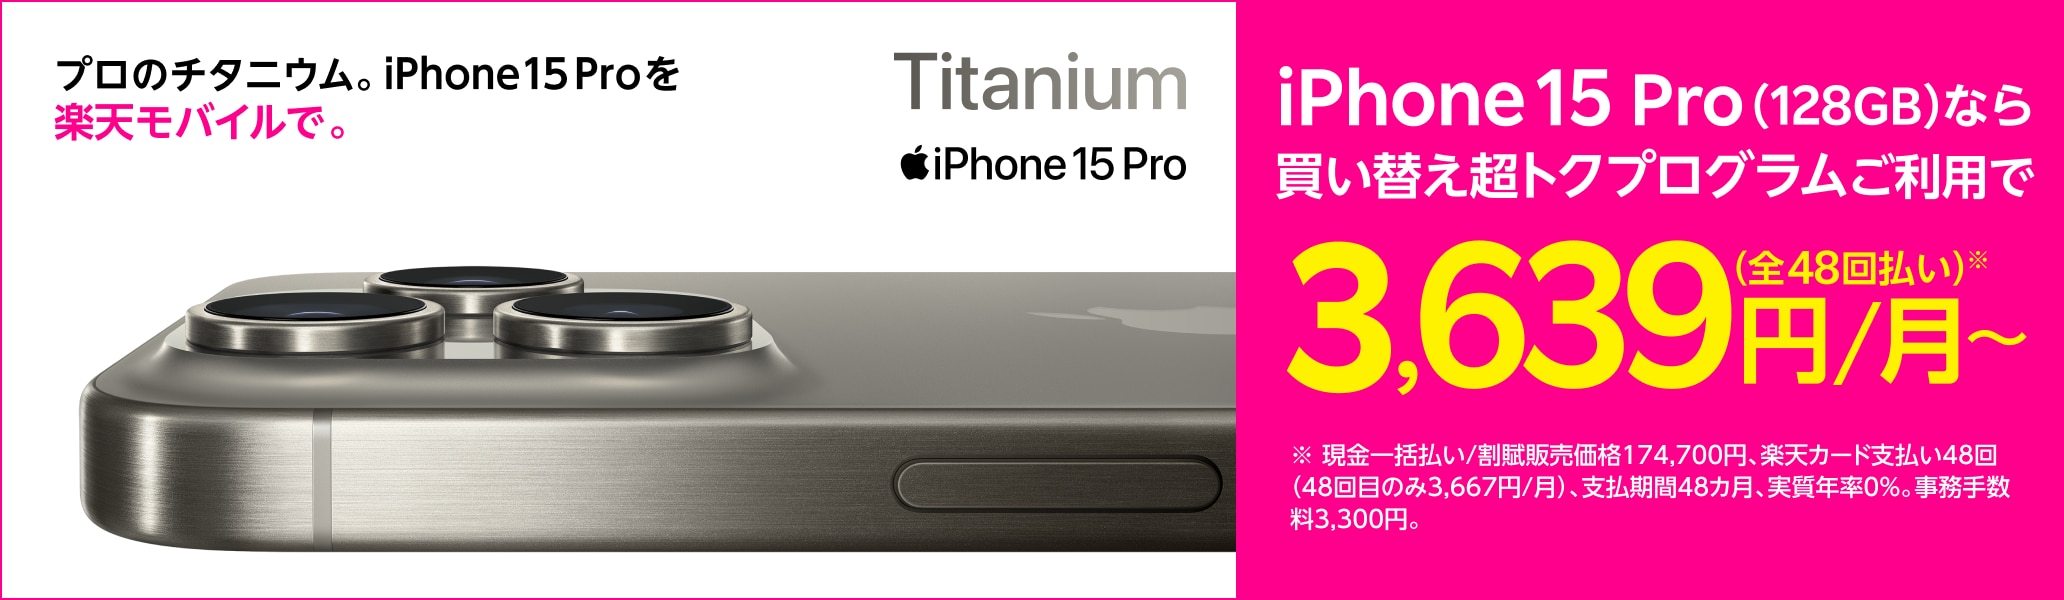 プロのチタニウム。iPhone 15 Proを楽天モバイルで。